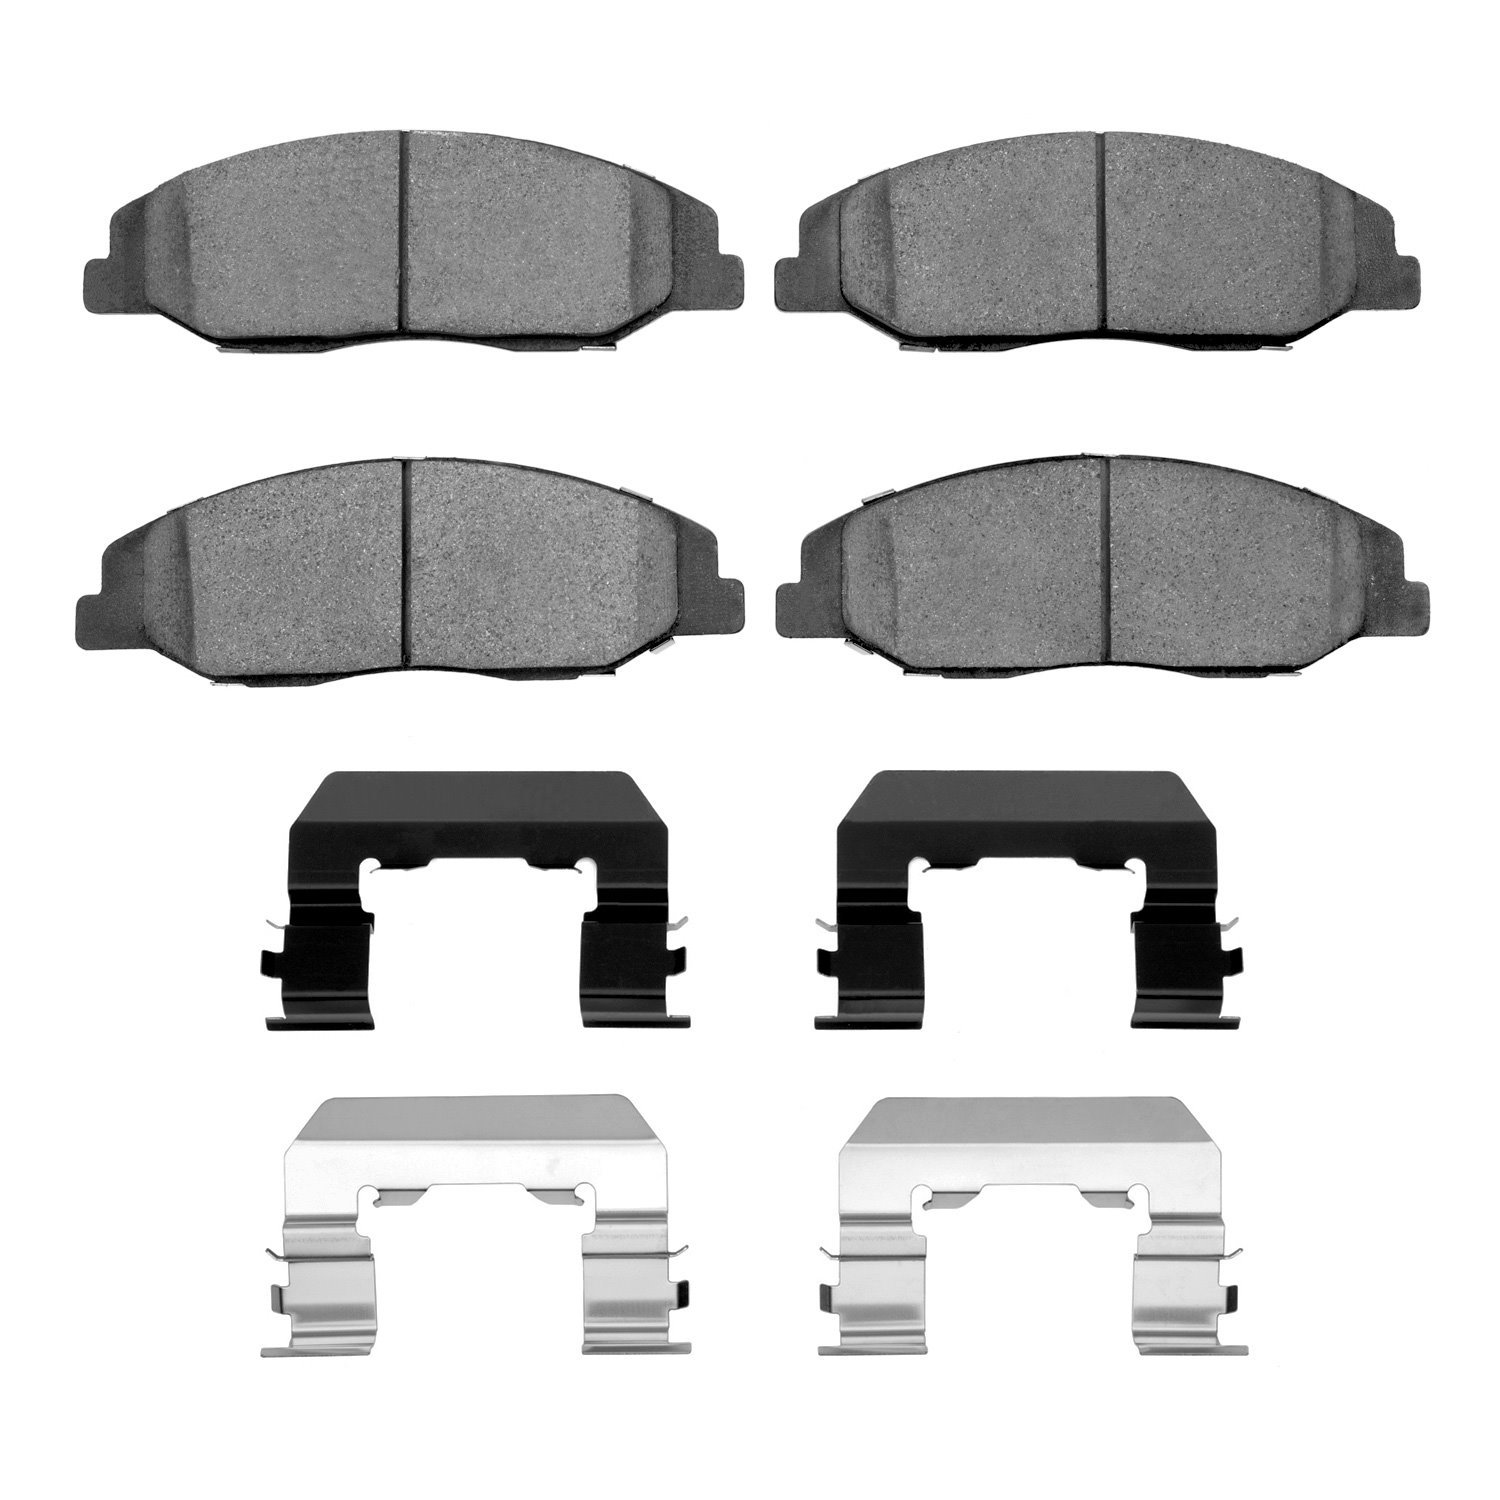 1310-1332-01 3000-Series Ceramic Brake Pads & Hardware Kit, 2008-2014 GM, Position: Front